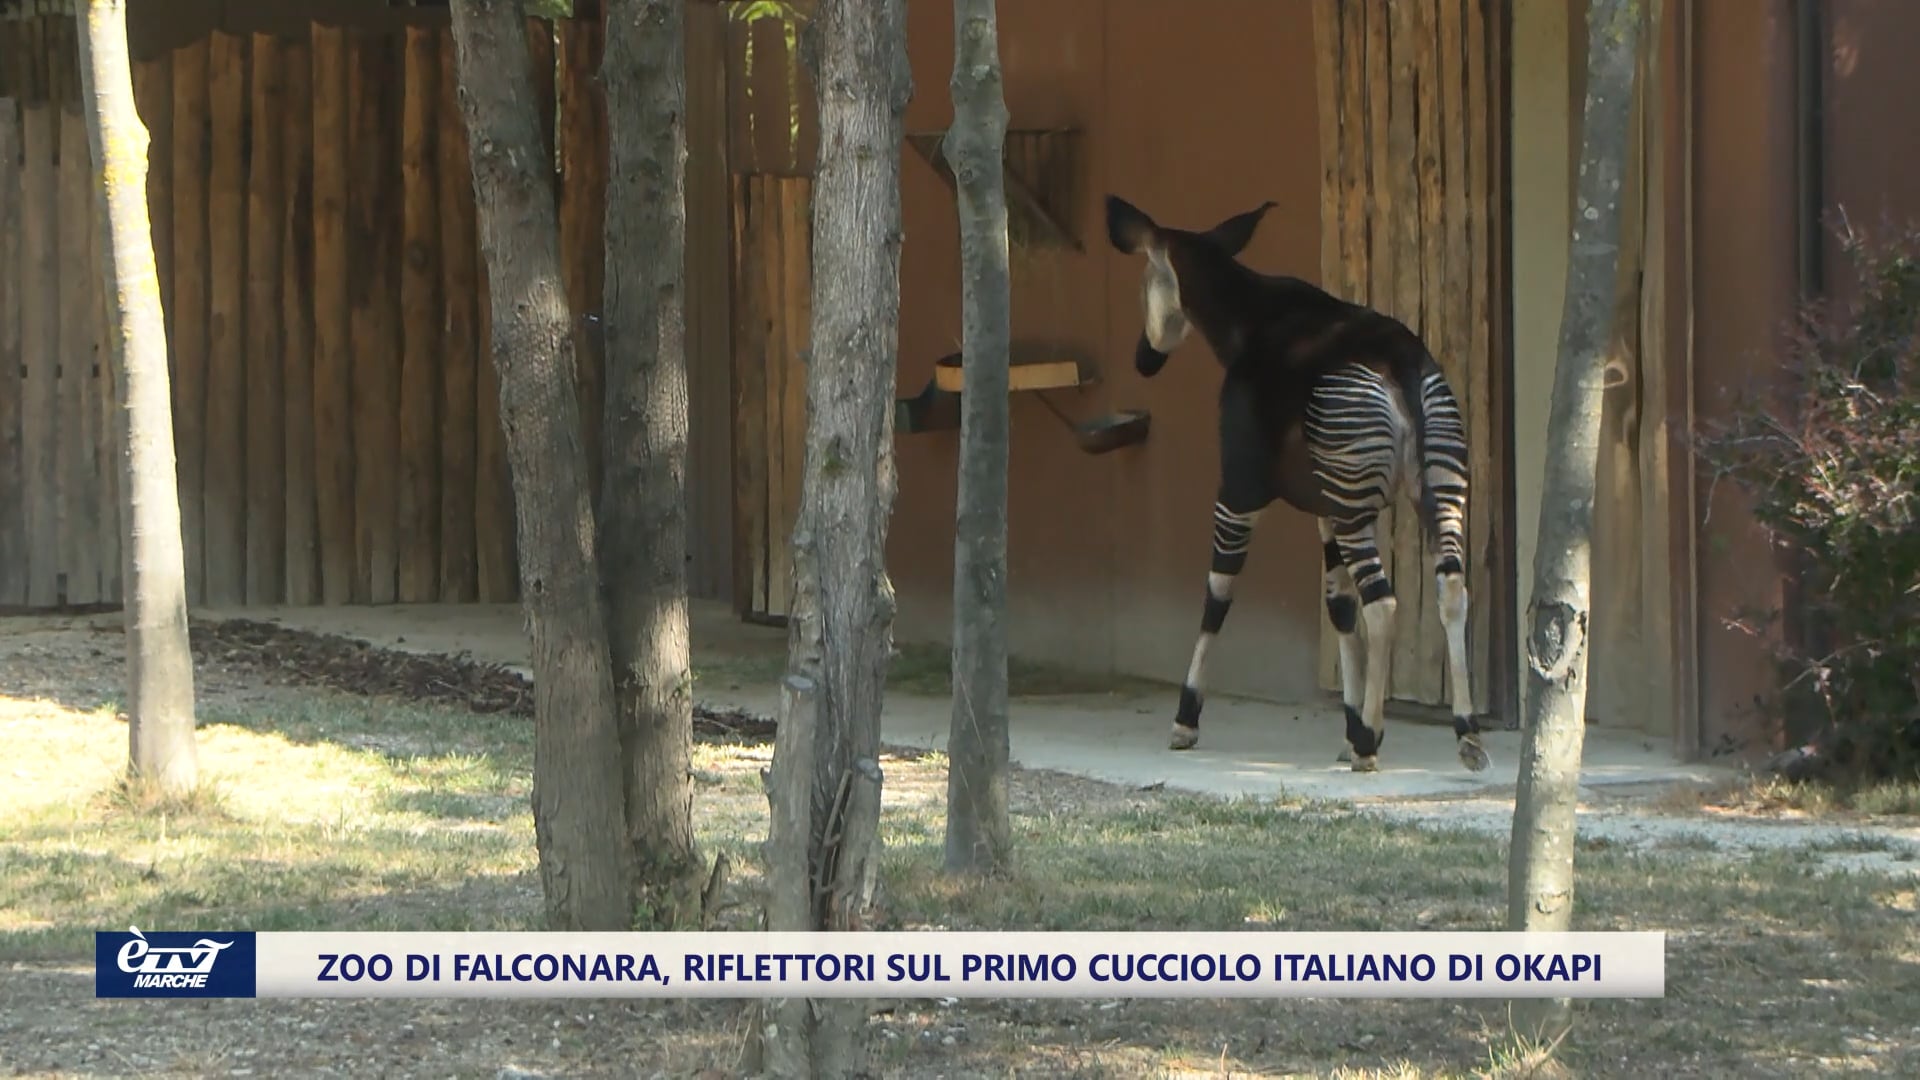 Parco Zoo di Falconara. Ecco il primo cucciolo italiano di okapi - VIDEO